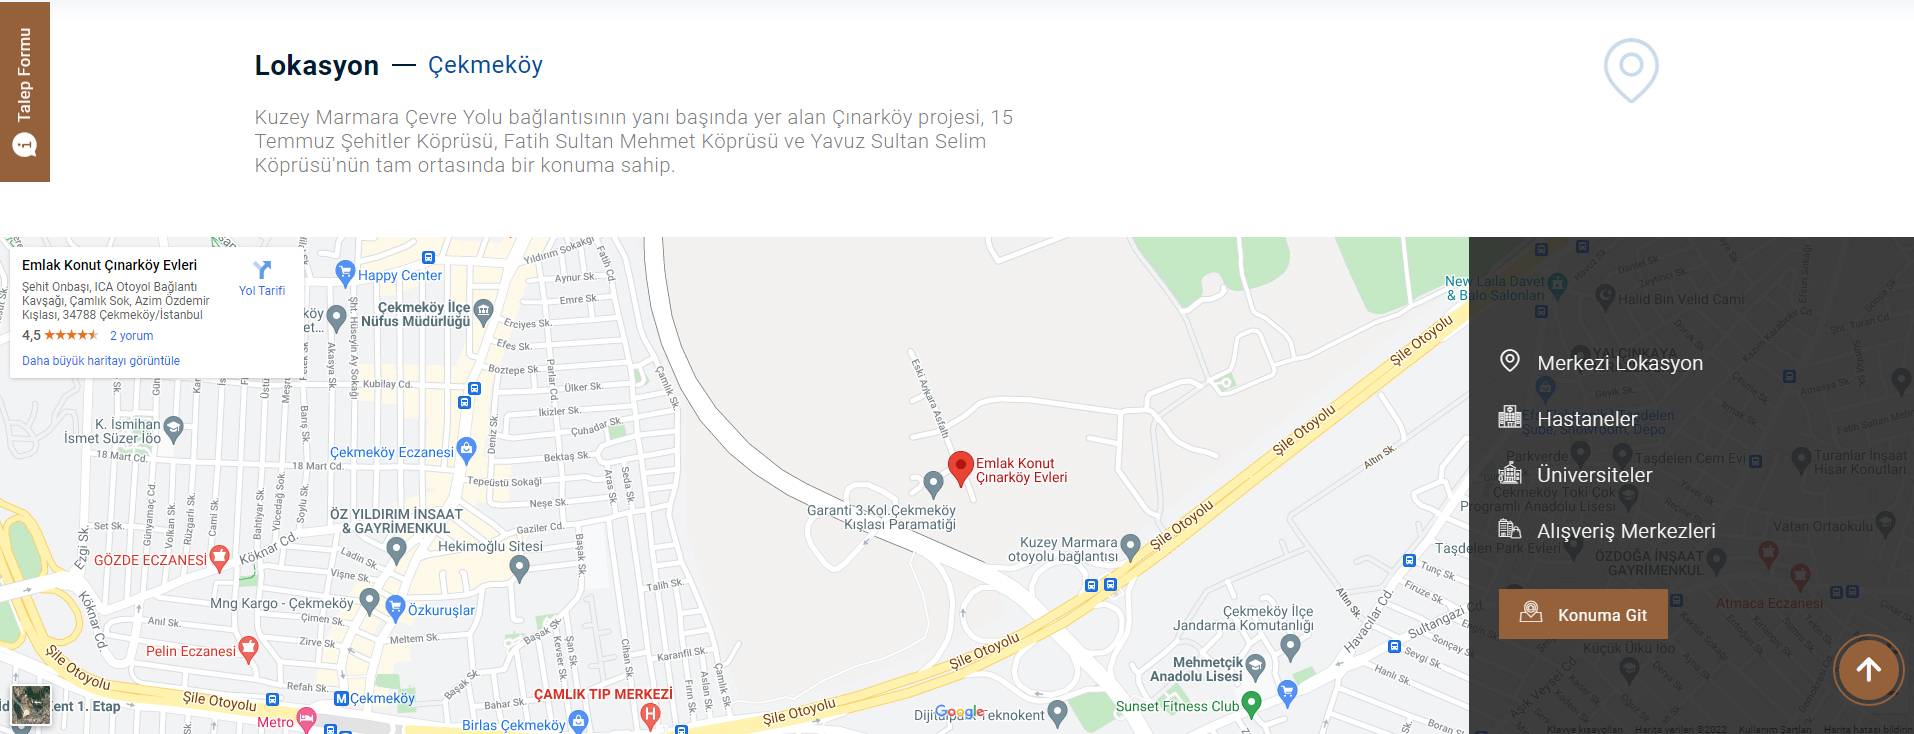 Emlak Konut Çınarköy Google Maps haritası